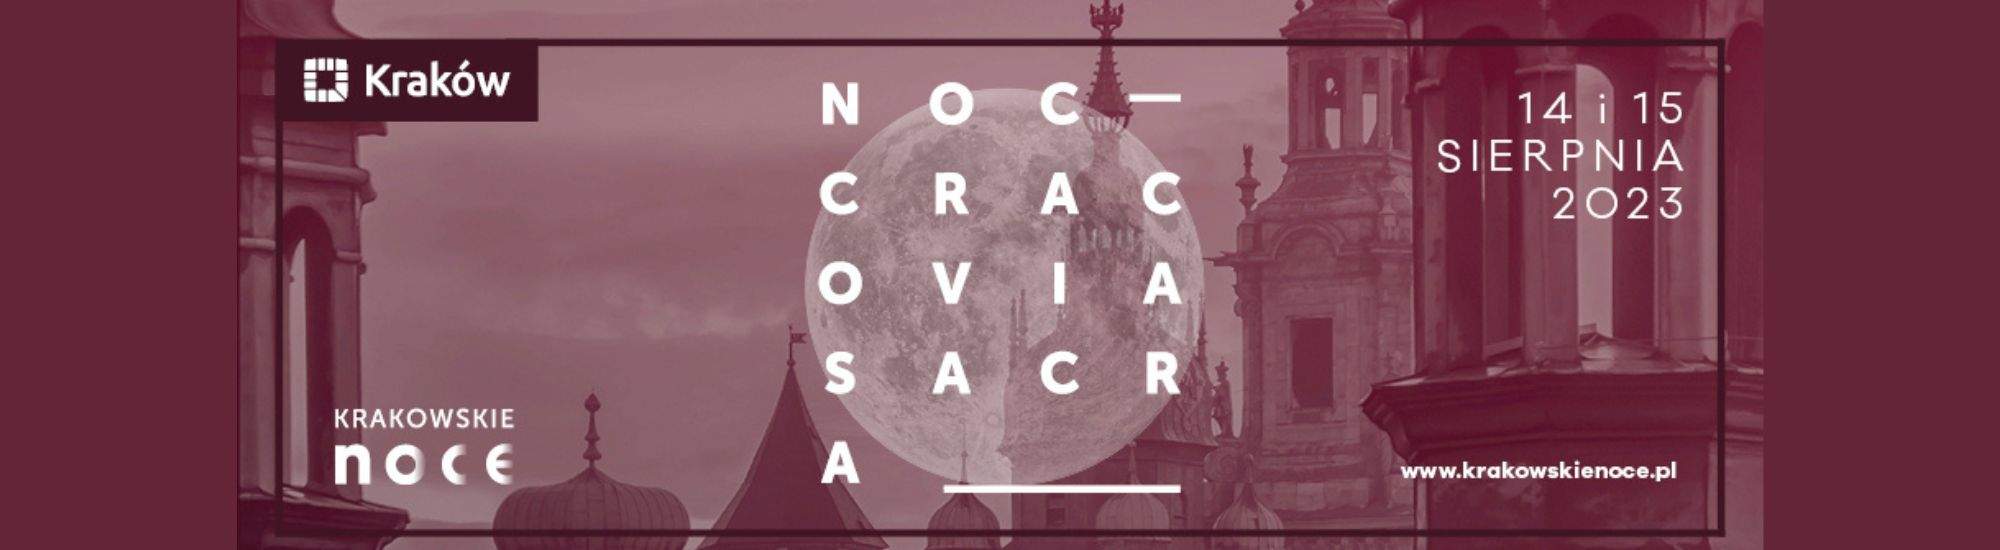 Noches de Cracovia Sacra: conciertos, exposiciones y descubrimiento de secretos de las iglesias